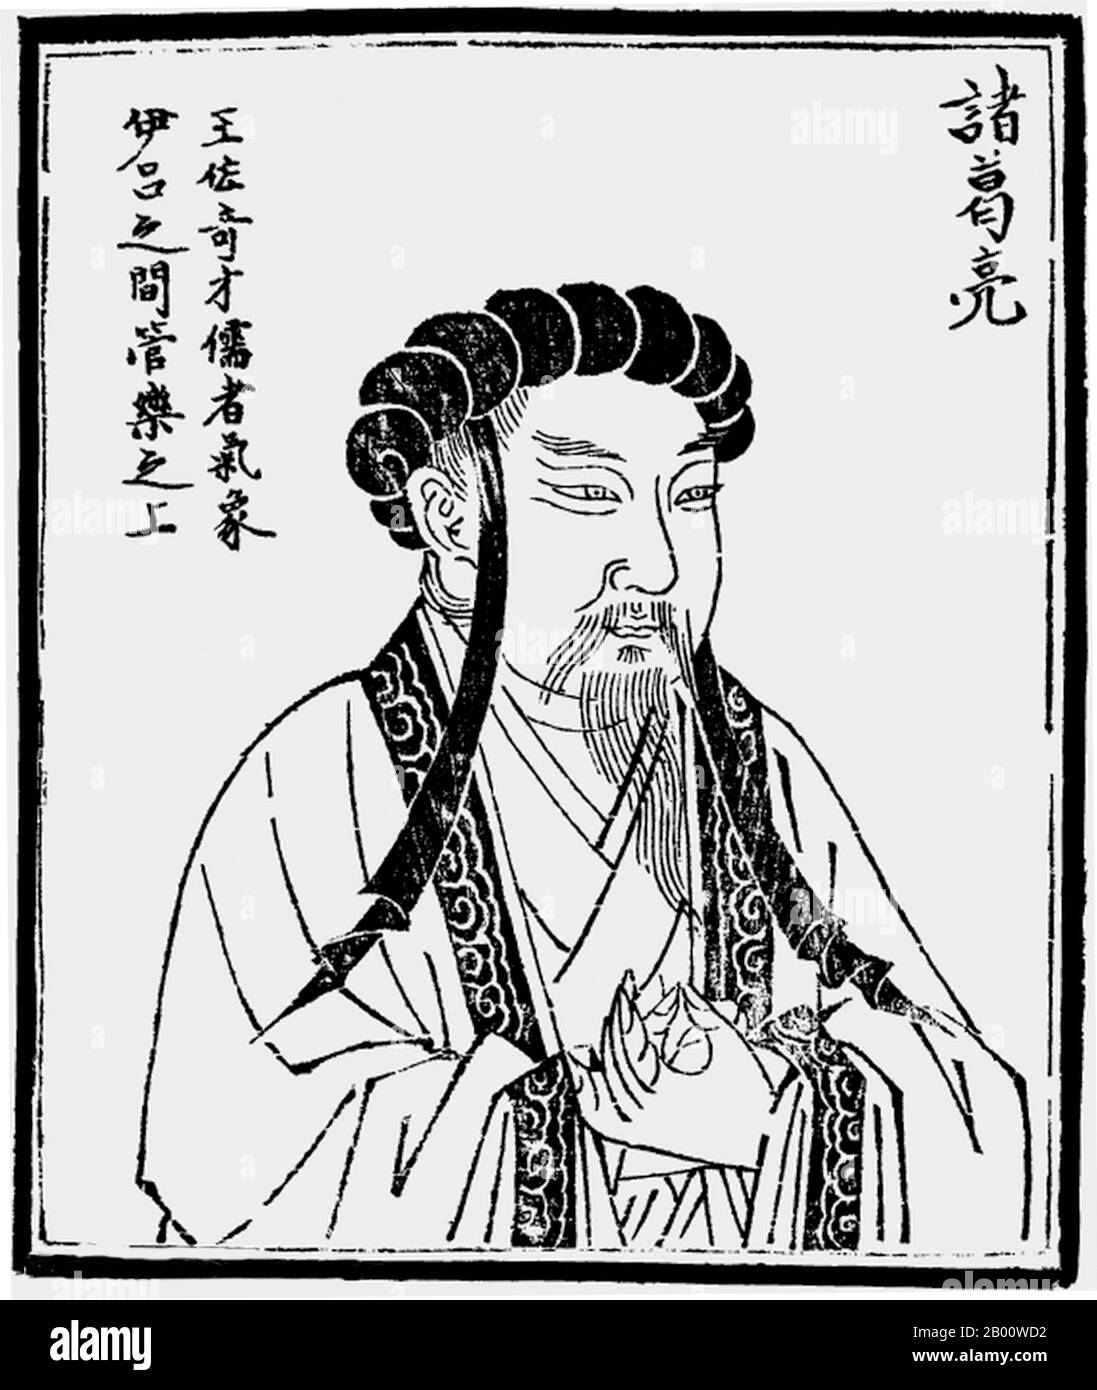 China: Zhuge Liang (CE 181-234) war Kanzler von Shu Han während der drei Königreiche Periode der chinesischen Geschichte (CE 220-280). Zhuge Liang (CE 181-234) war Kanzler von Shu Han während der drei Königreiche Periode der chinesischen Geschichte. Er wird oft als der größte und versierteste Stratege seiner Zeit anerkannt. Oft mit einer Robe und einem Fächer aus Kranichfedern dargestellt, war Zhuge nicht nur ein wichtiger Militärstratege und Staatsmann, sondern auch ein versierter Gelehrter und Erfinder, mit einem bewunderten Ruf, der noch während seines Lebens in relativer Abgeschiedenheit wuchs. Stockfoto